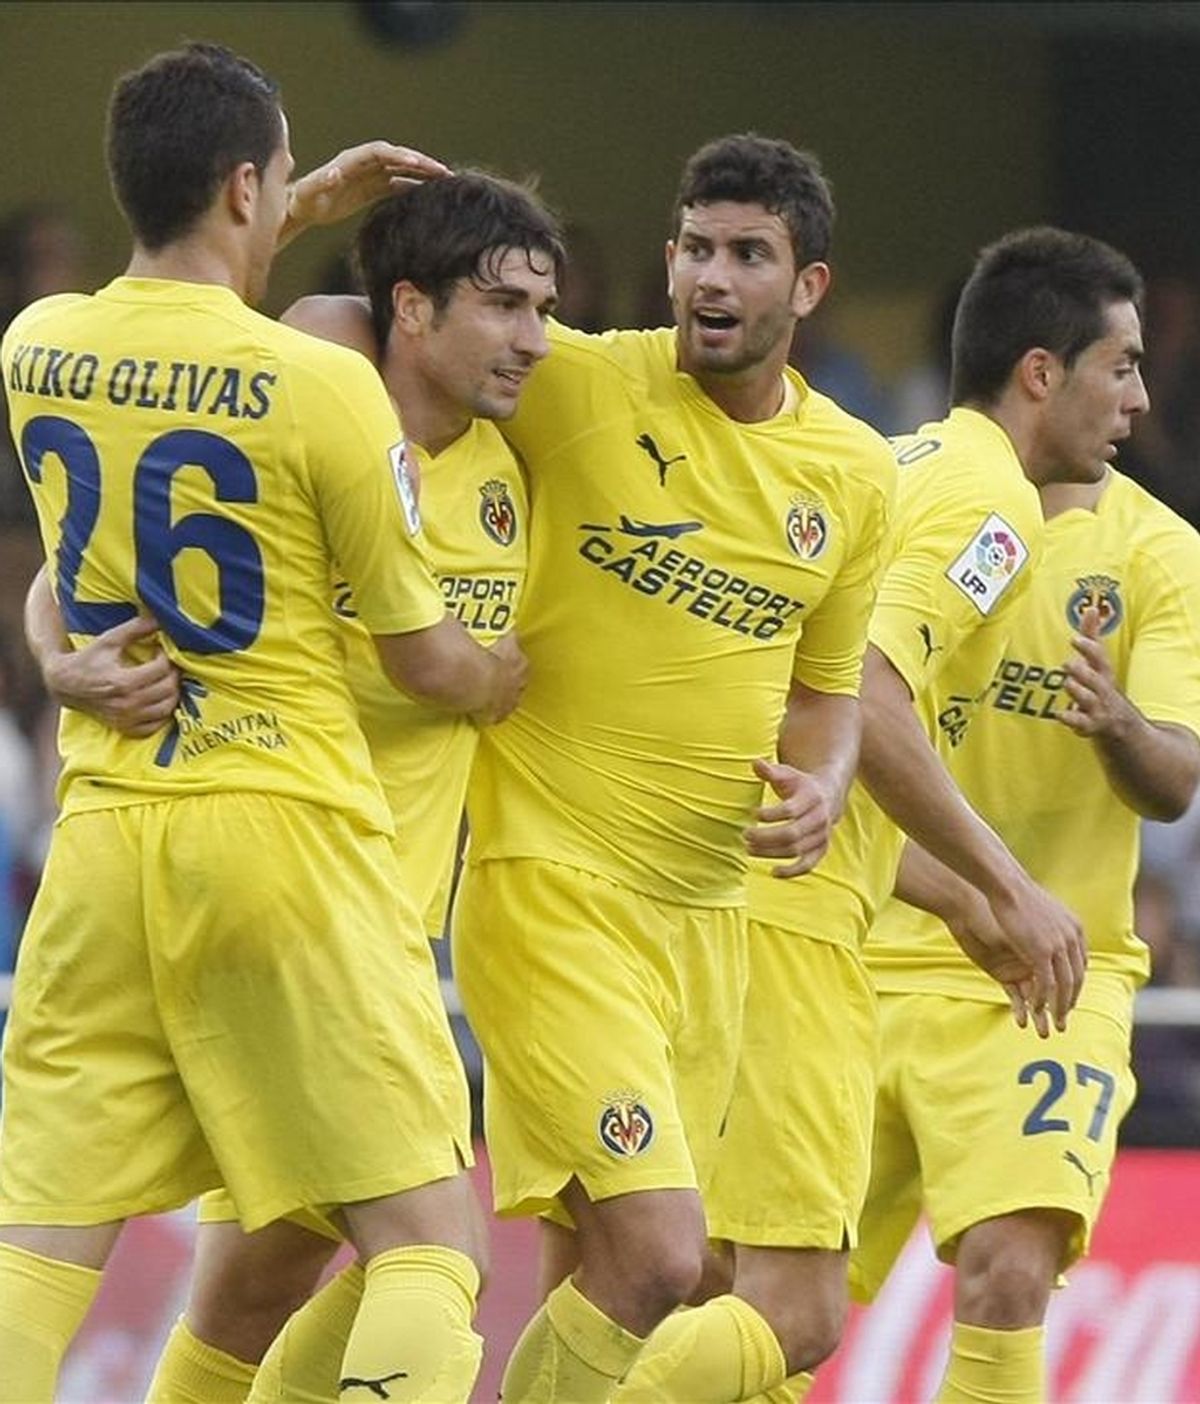 El centrocampista del Villarreal Rubén Gracia "Cani" (2i), celebra con sus compañeros la consecución del primer gol de su equipo frente al Getafe, durante el partido de Liga en el estadio de El Madrigal, en Villarreal. EFE